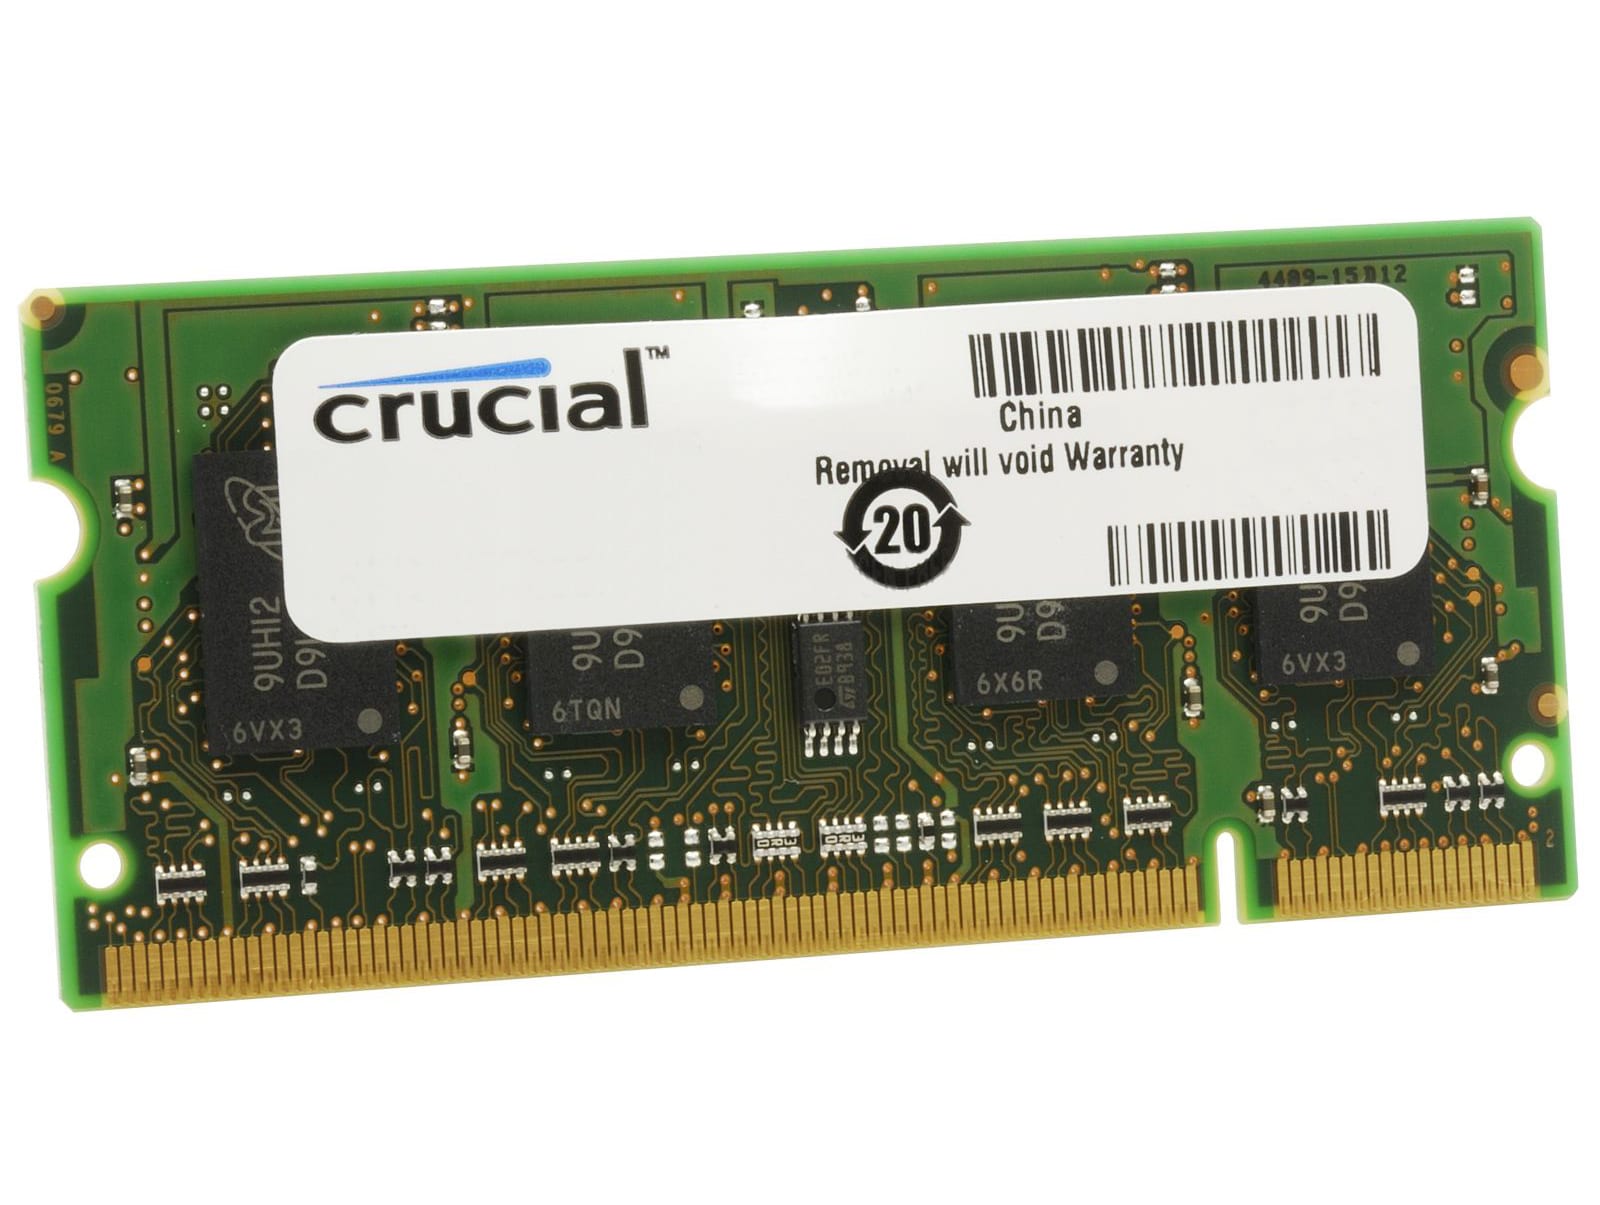 Crucial 4GB DDR3L 1600MHz SO-DIMM 